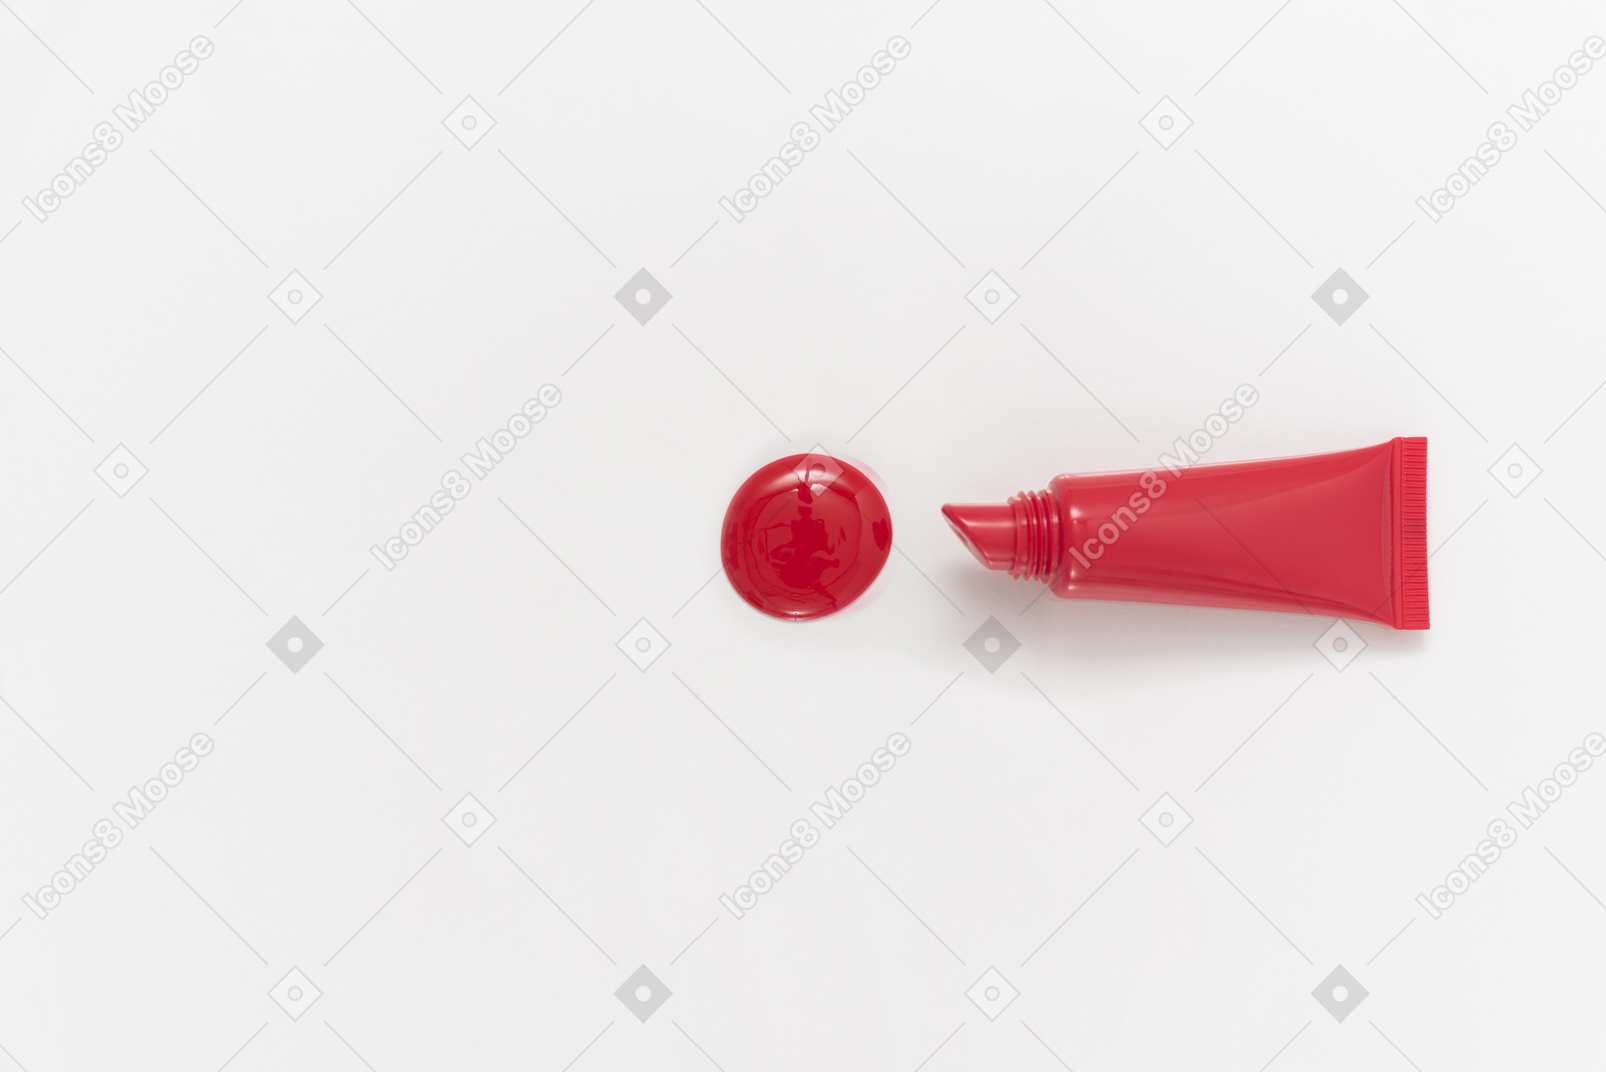 Gota de batom vermelho e frasco de batom no fundo branco